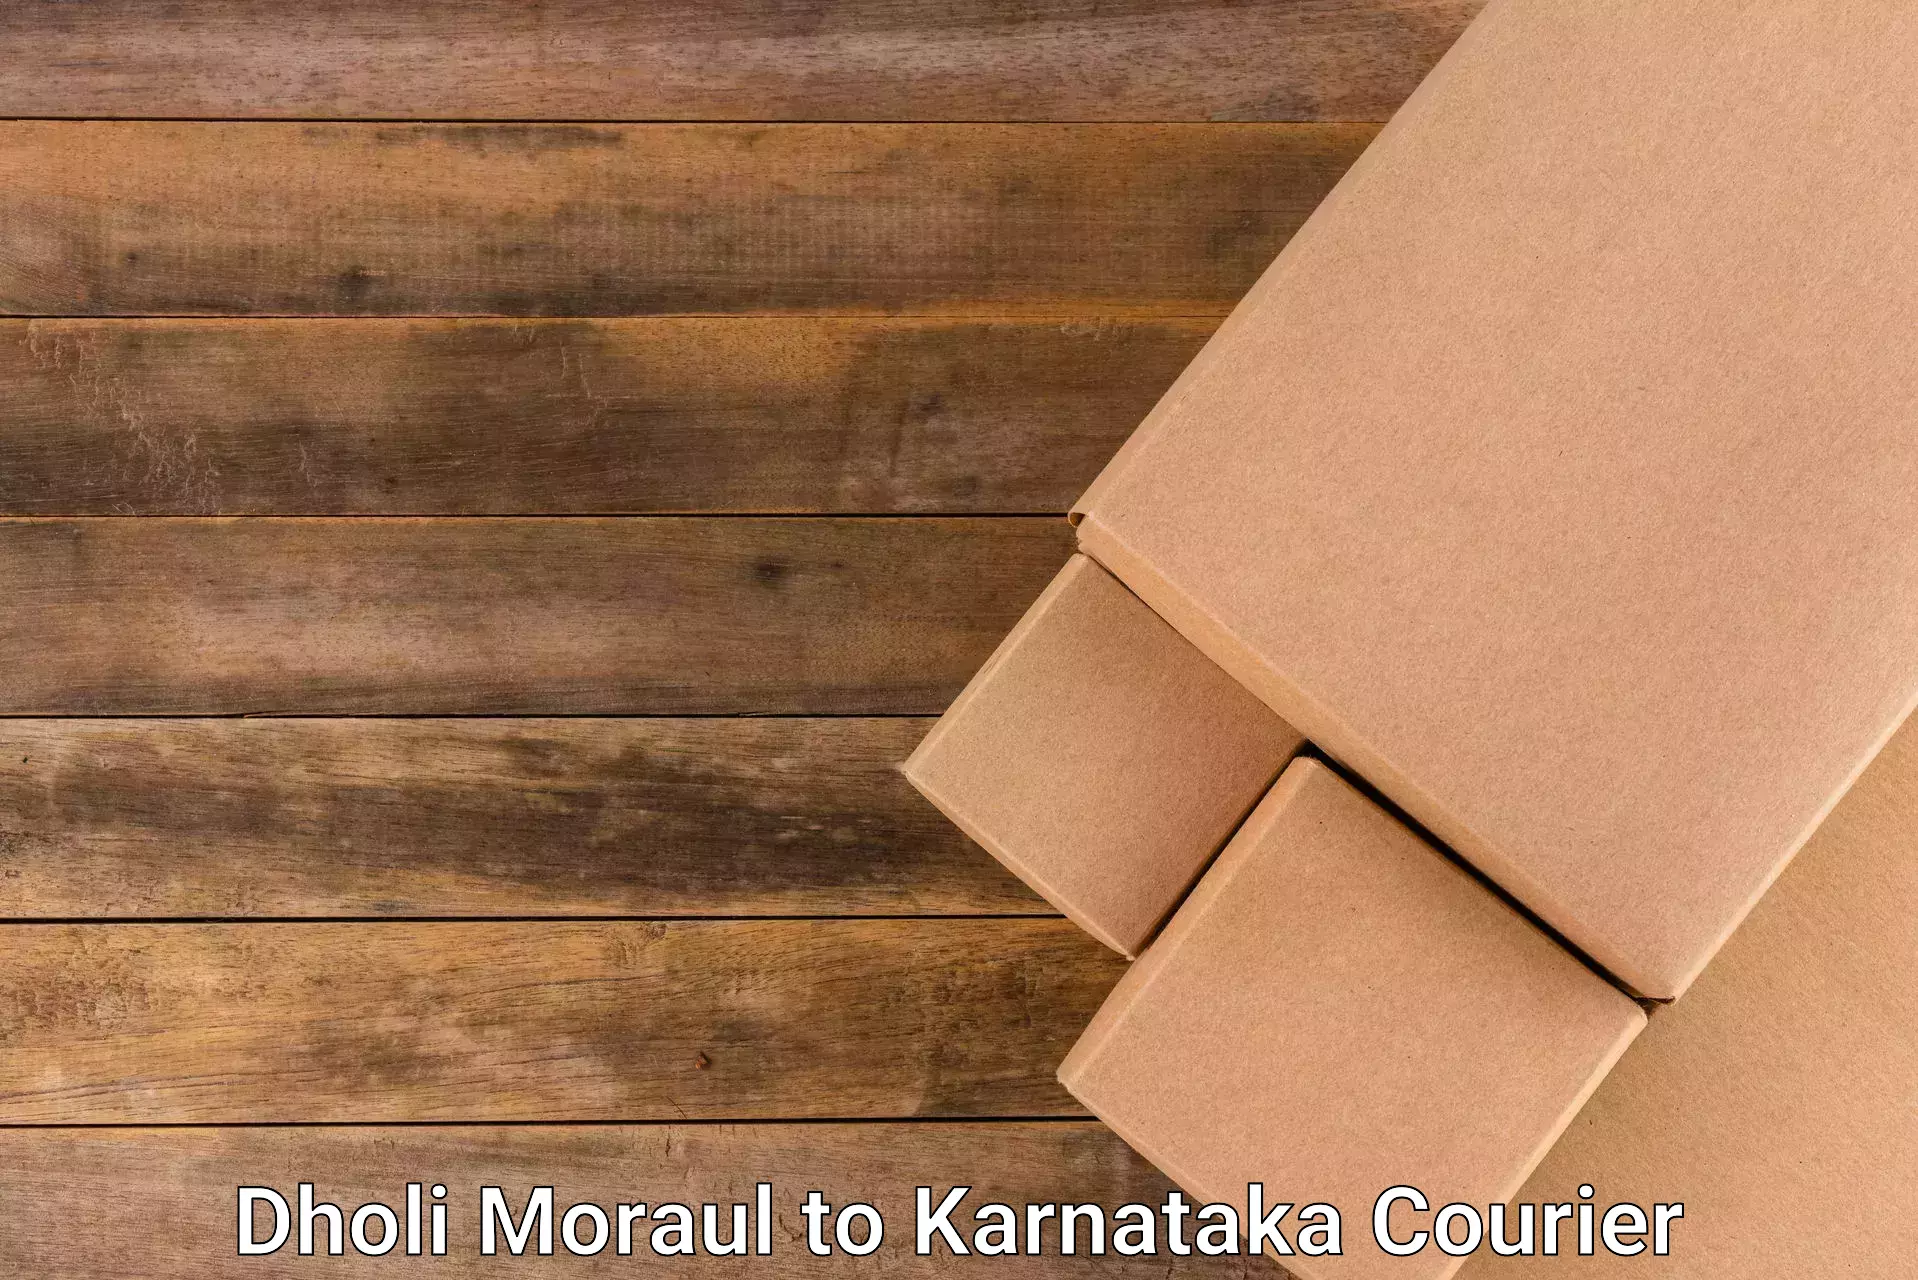 Full-service courier options Dholi Moraul to Yenepoya Mangalore